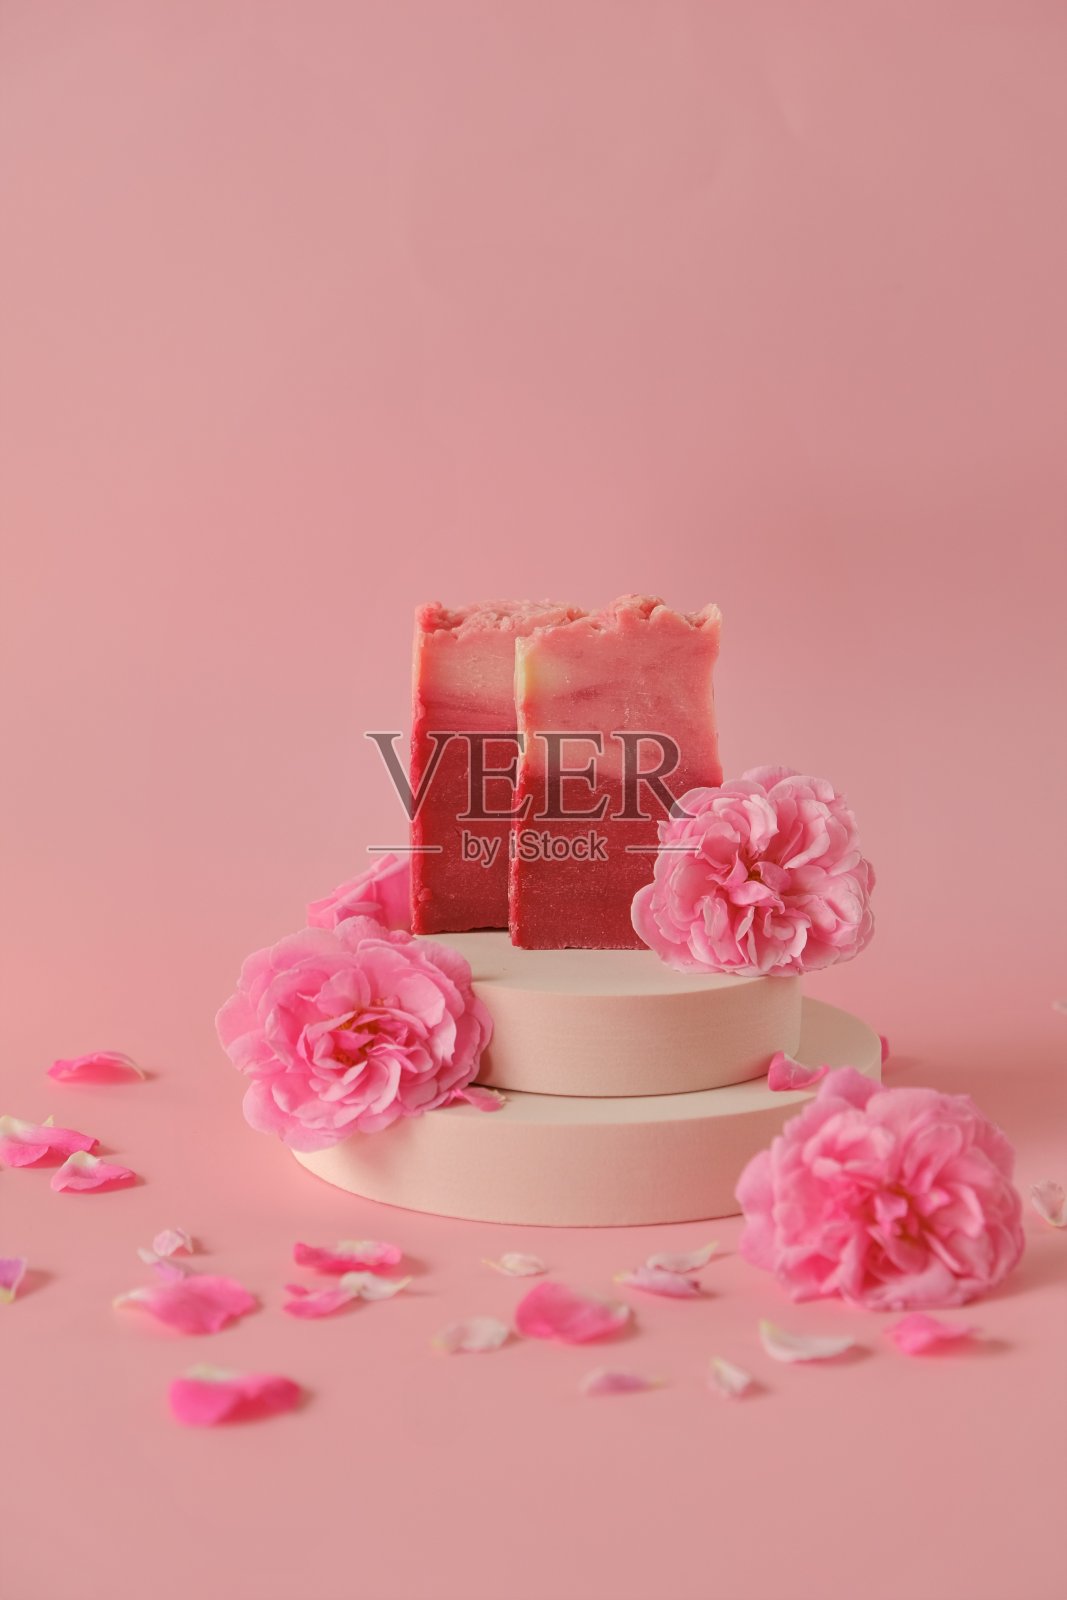 玫瑰皂。美丽和芳香疗法。花肥皂。粉红色的肥皂条和粉红色的玫瑰在讲台上粉红色的背景照片摄影图片